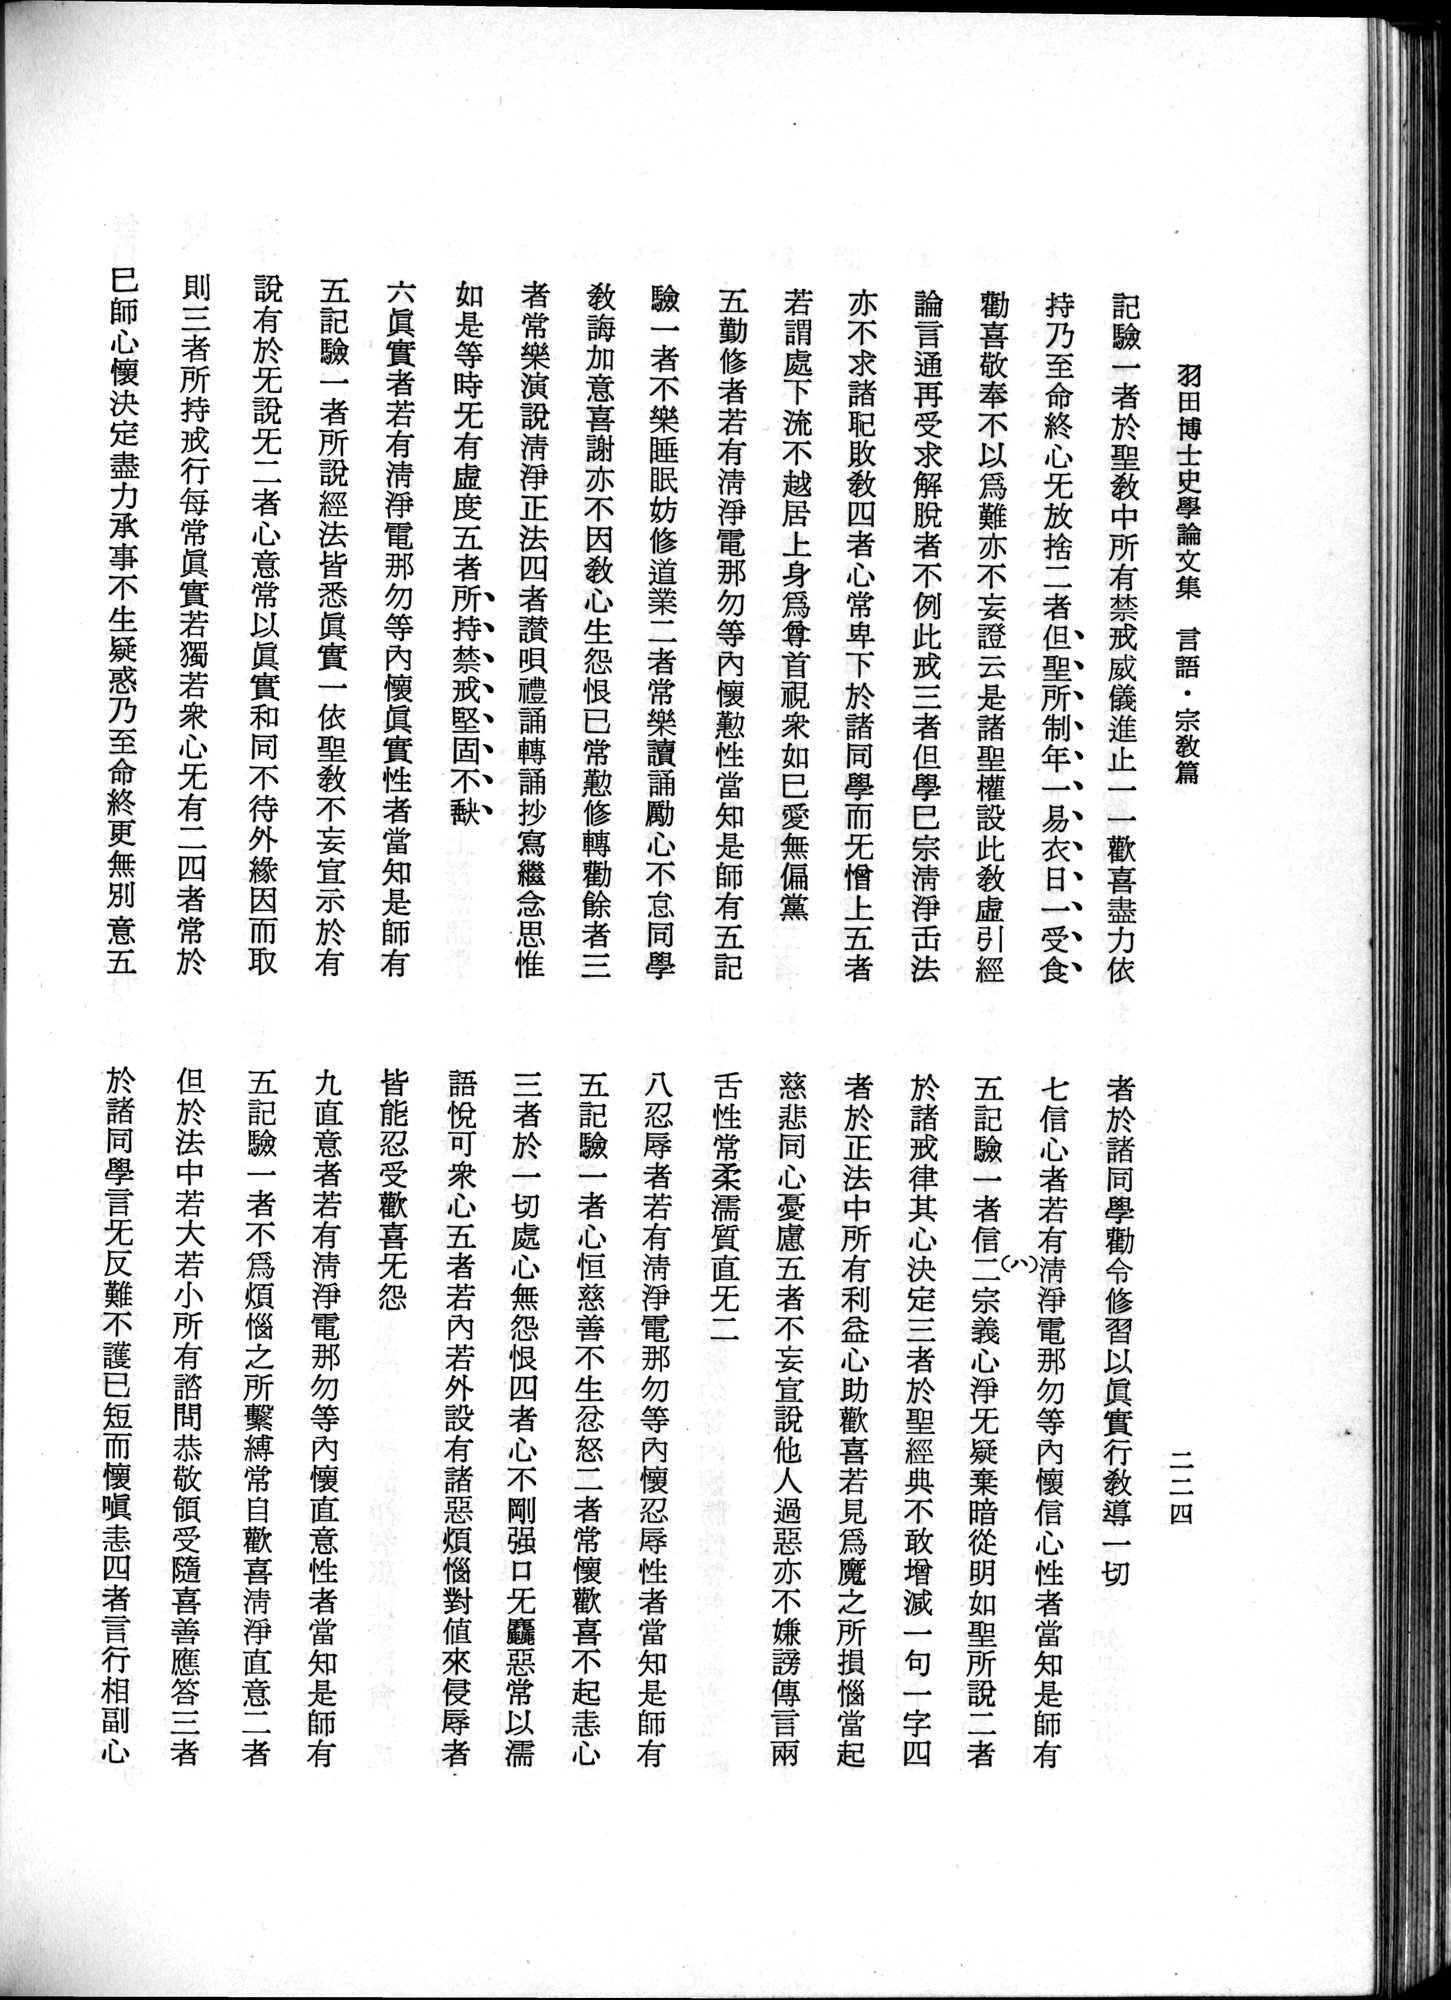 羽田博士史学論文集 : vol.2 / 286 ページ（白黒高解像度画像）